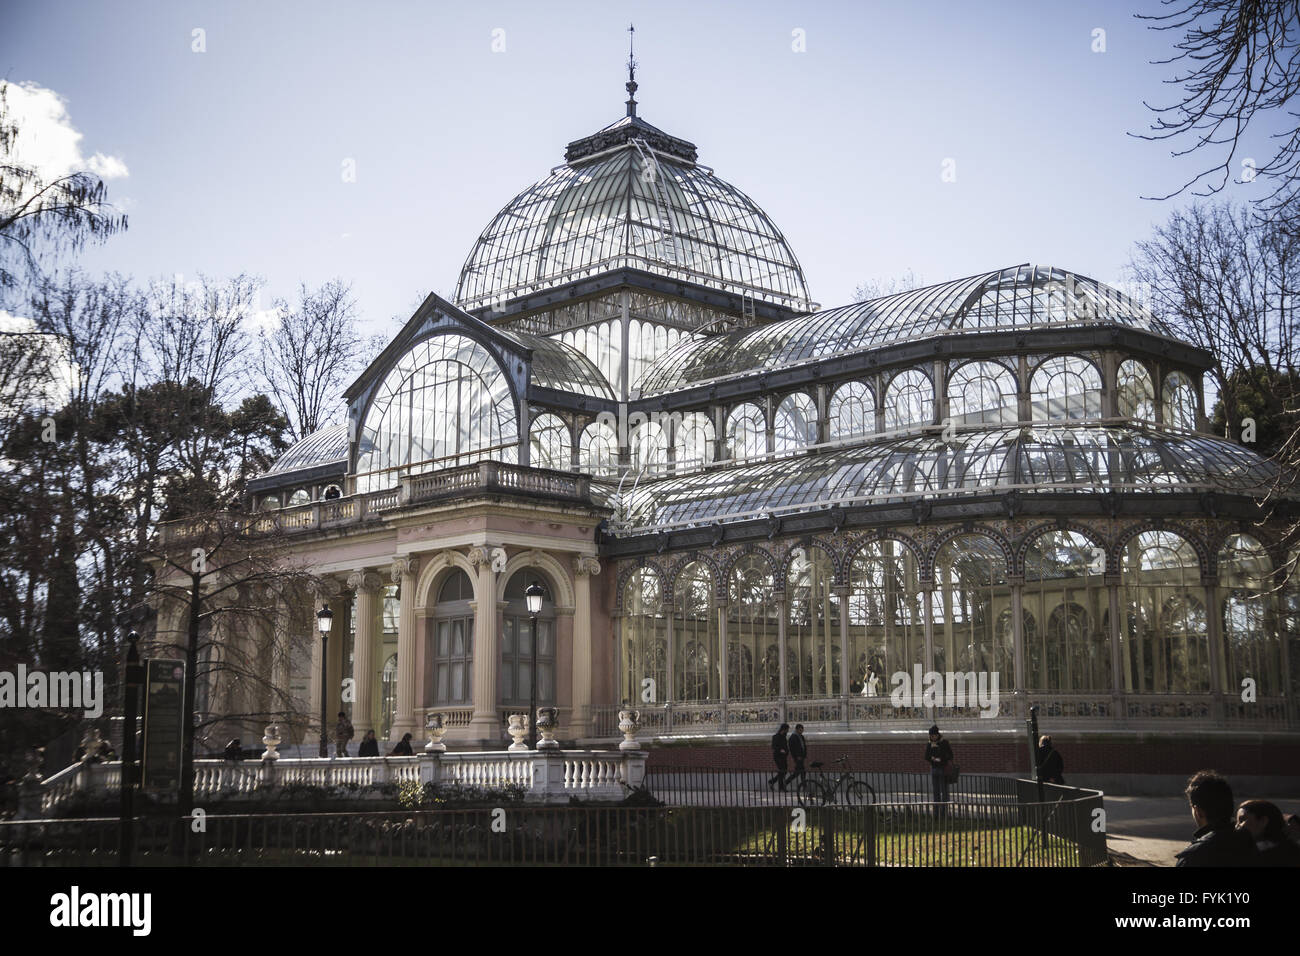 Crystal Palace (Palacio de Cristal) in Parque del Retiro in Madrid Stock Photo